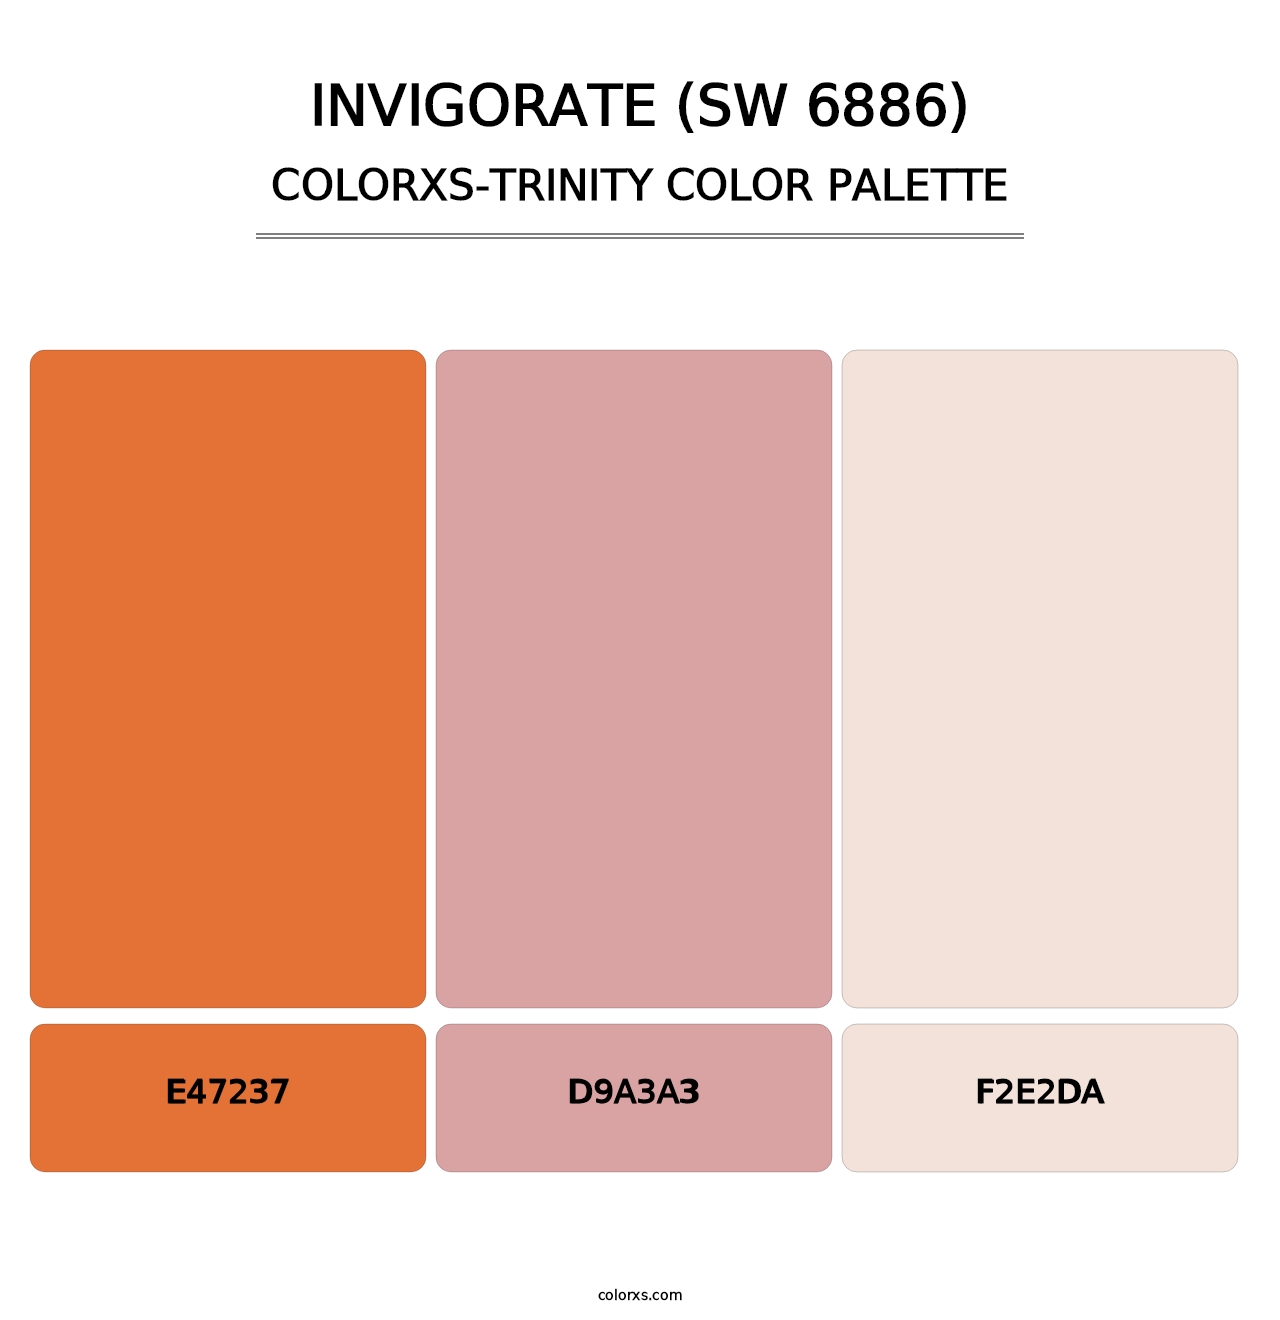 Invigorate (SW 6886) - Colorxs Trinity Palette